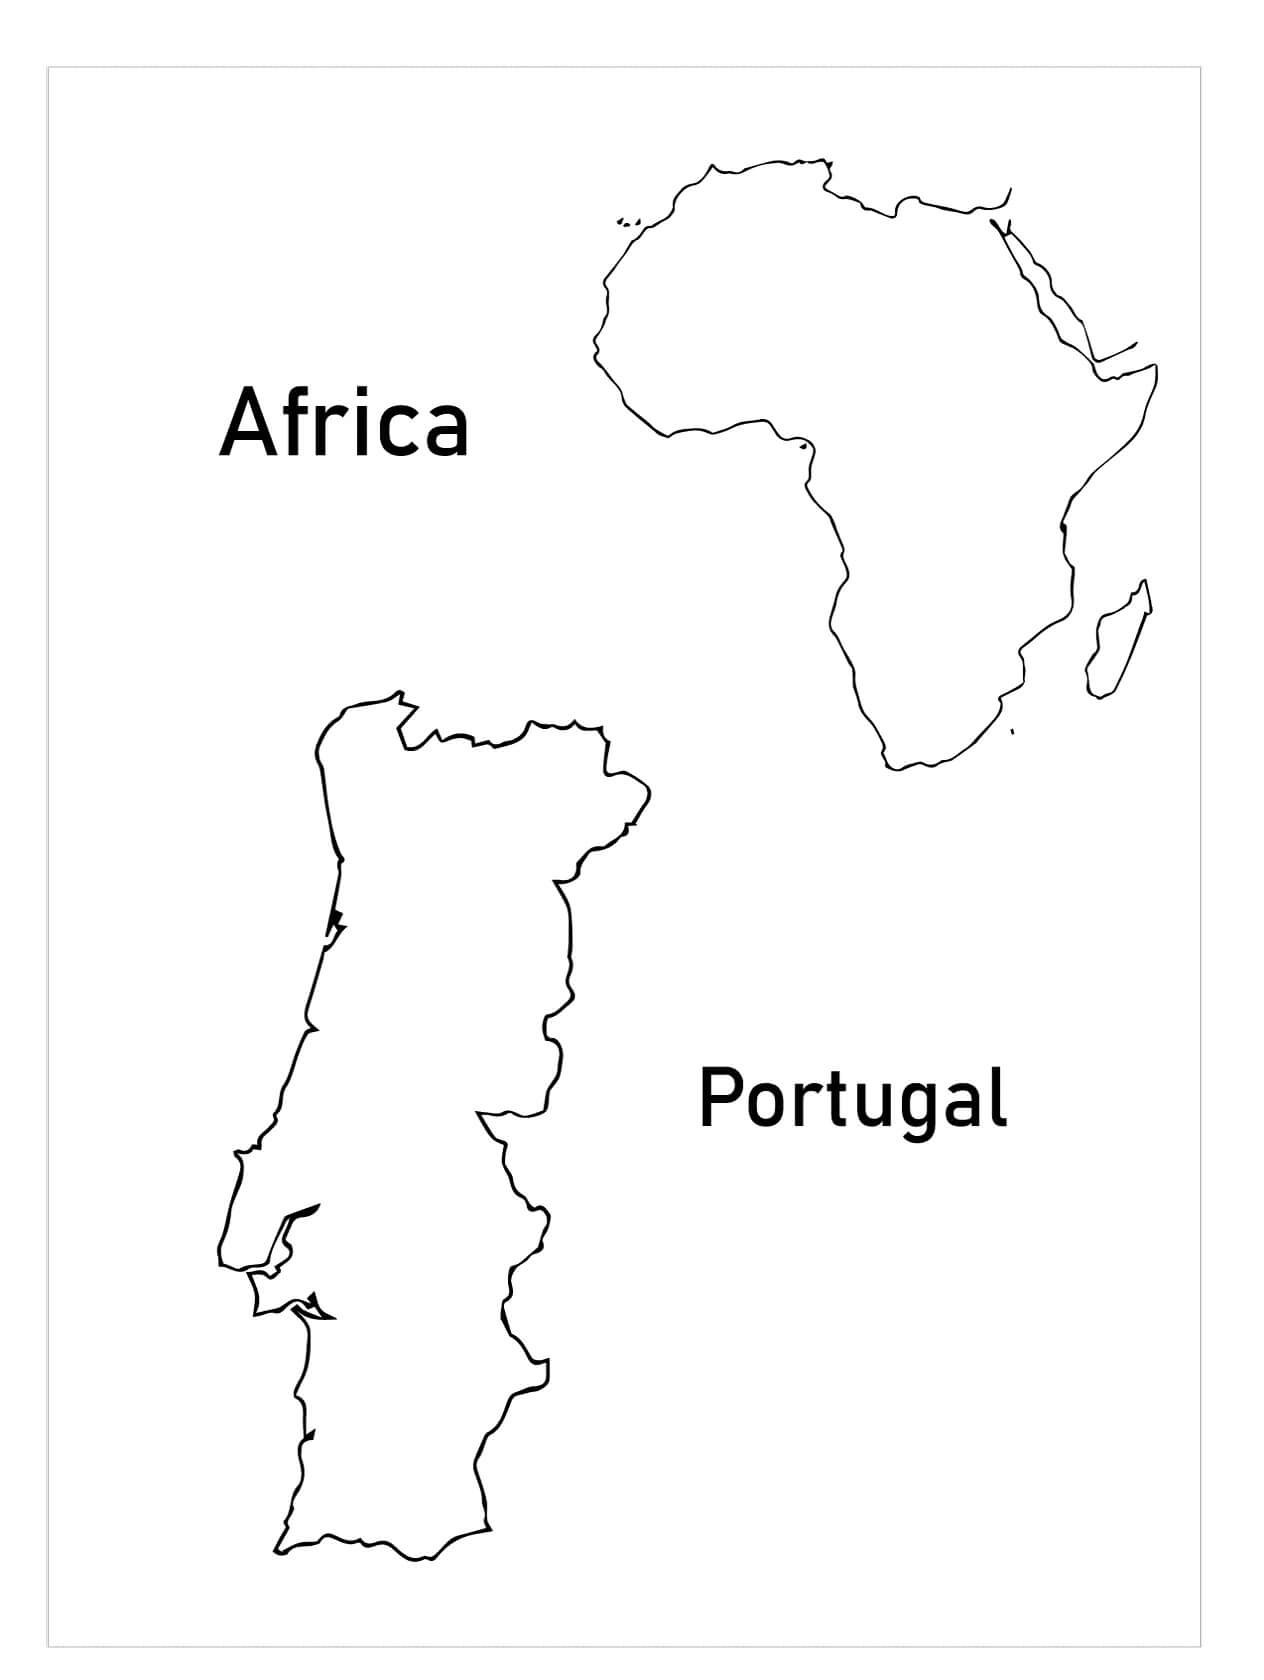 Desenhos de Mapa de Portugal e África para colorir